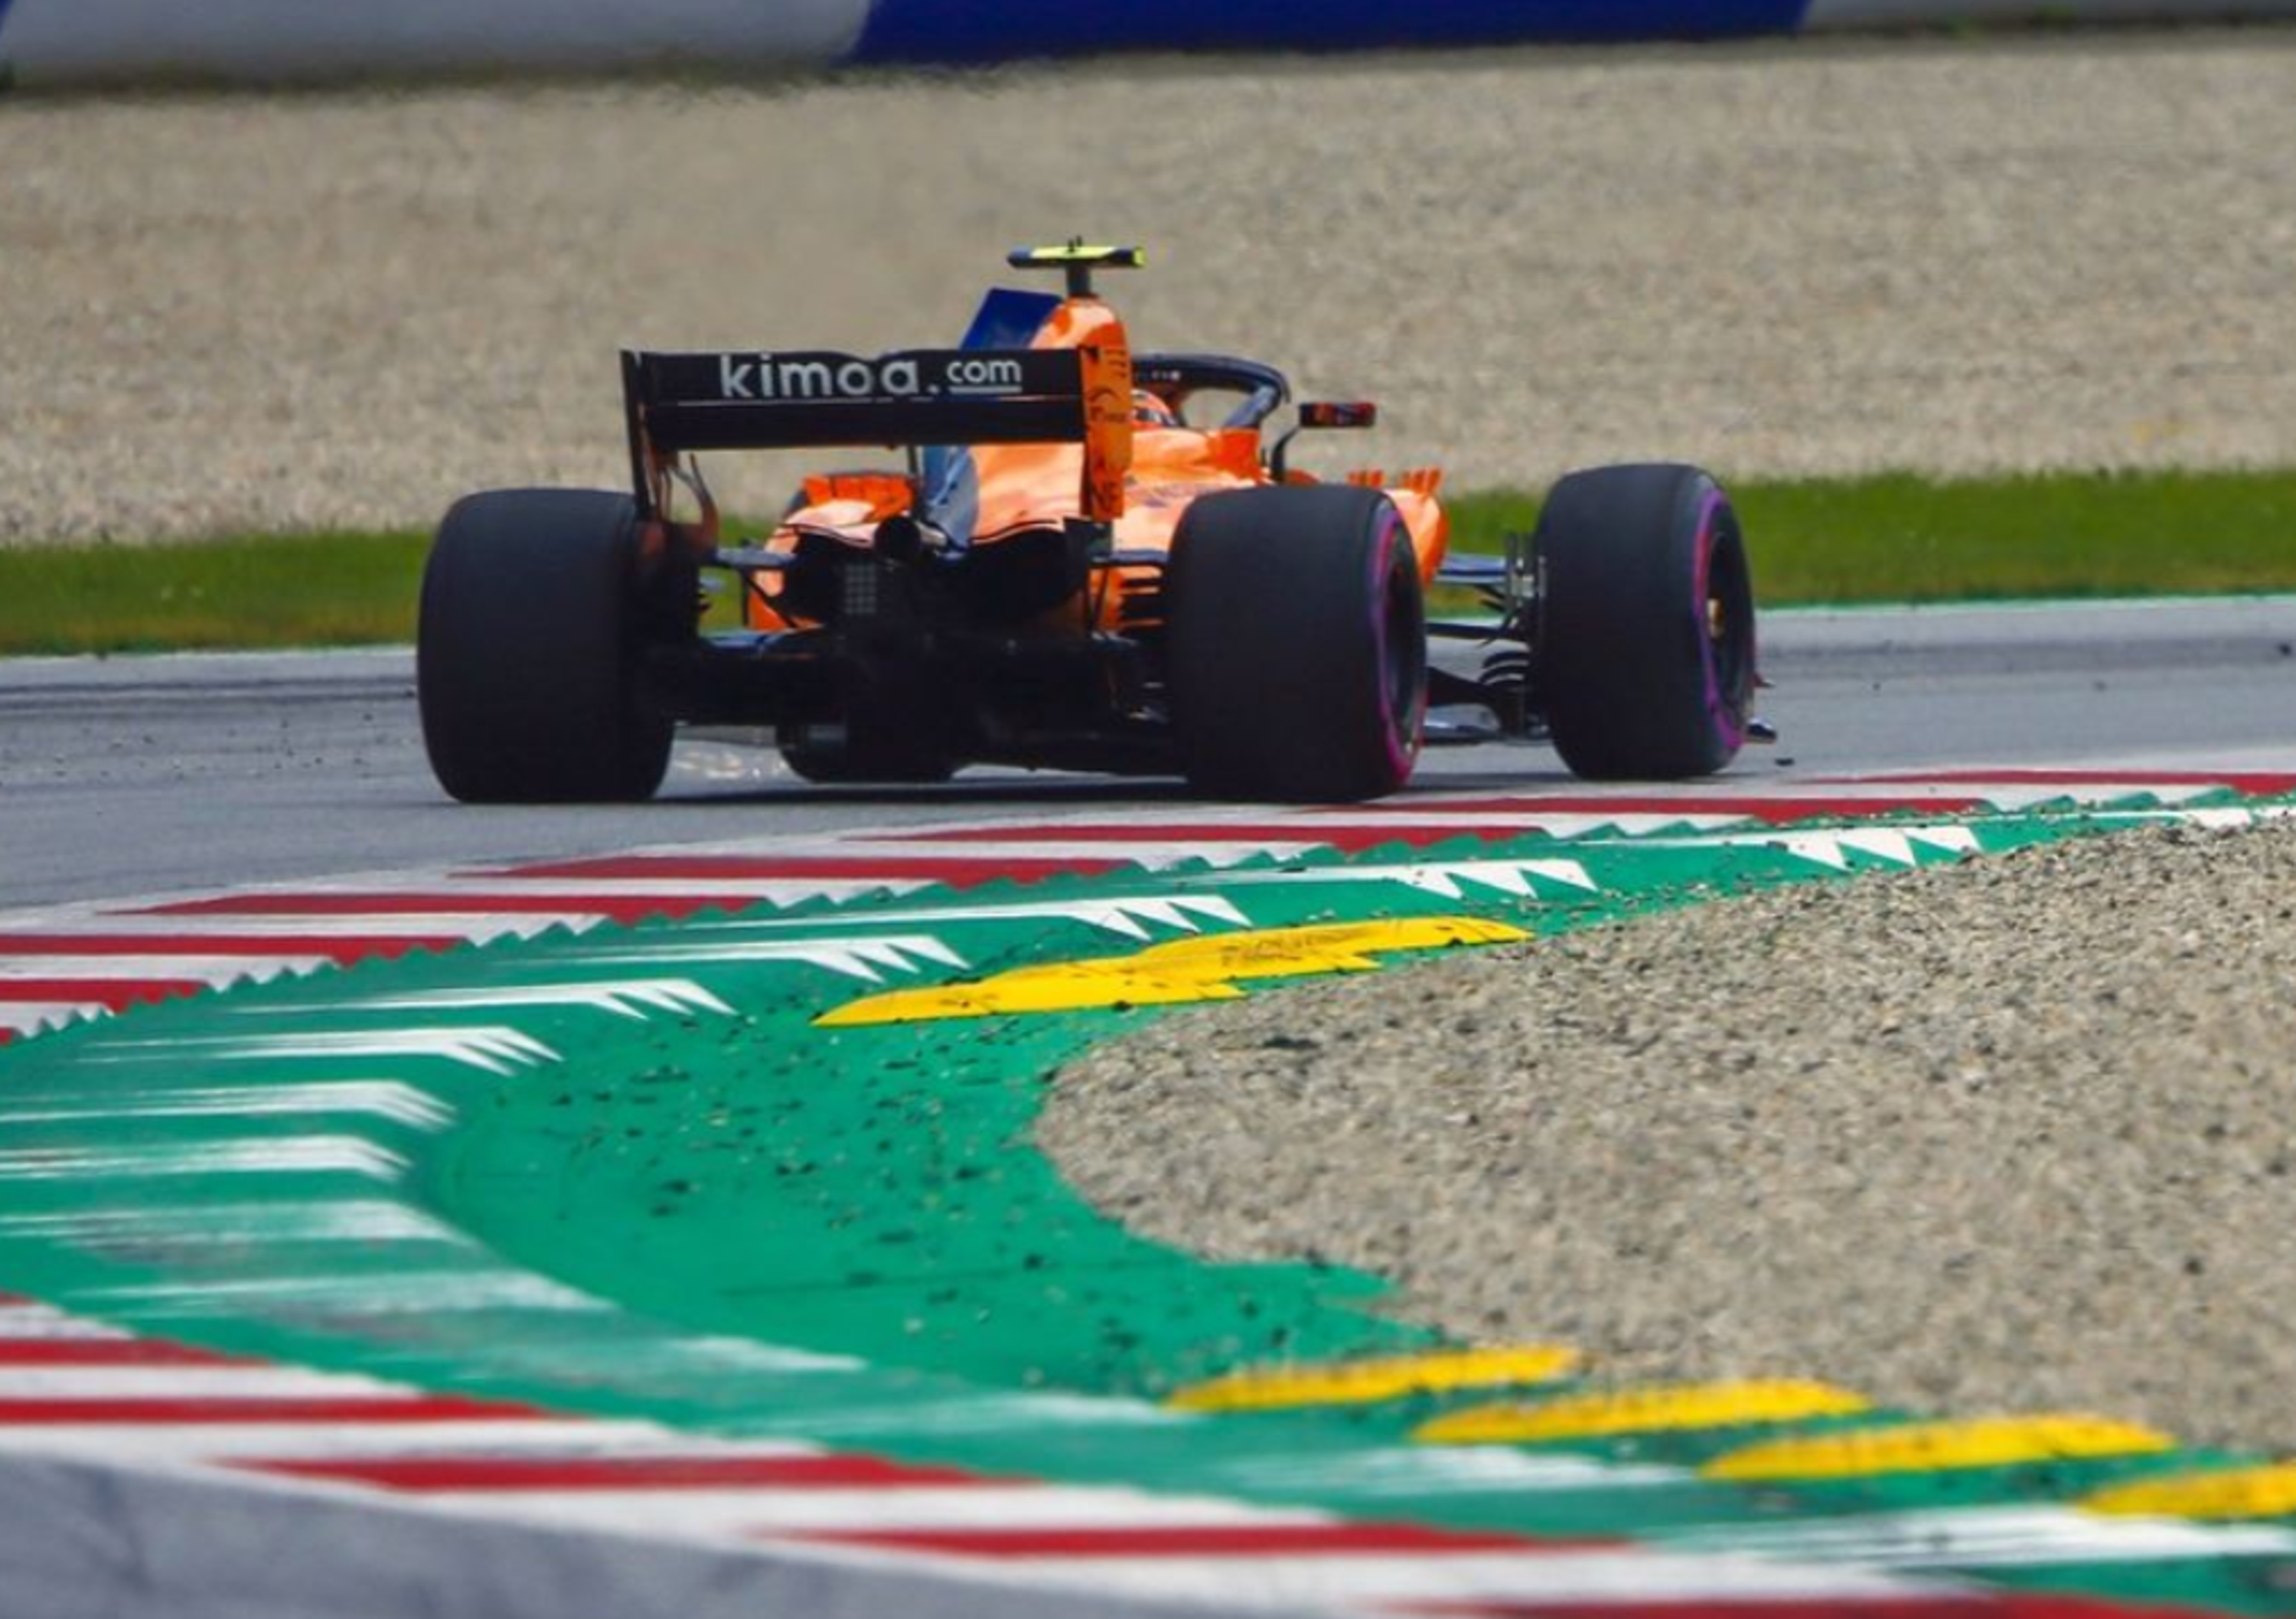 McLaren F1 annuncia dei cambiamenti nella leadership della struttura